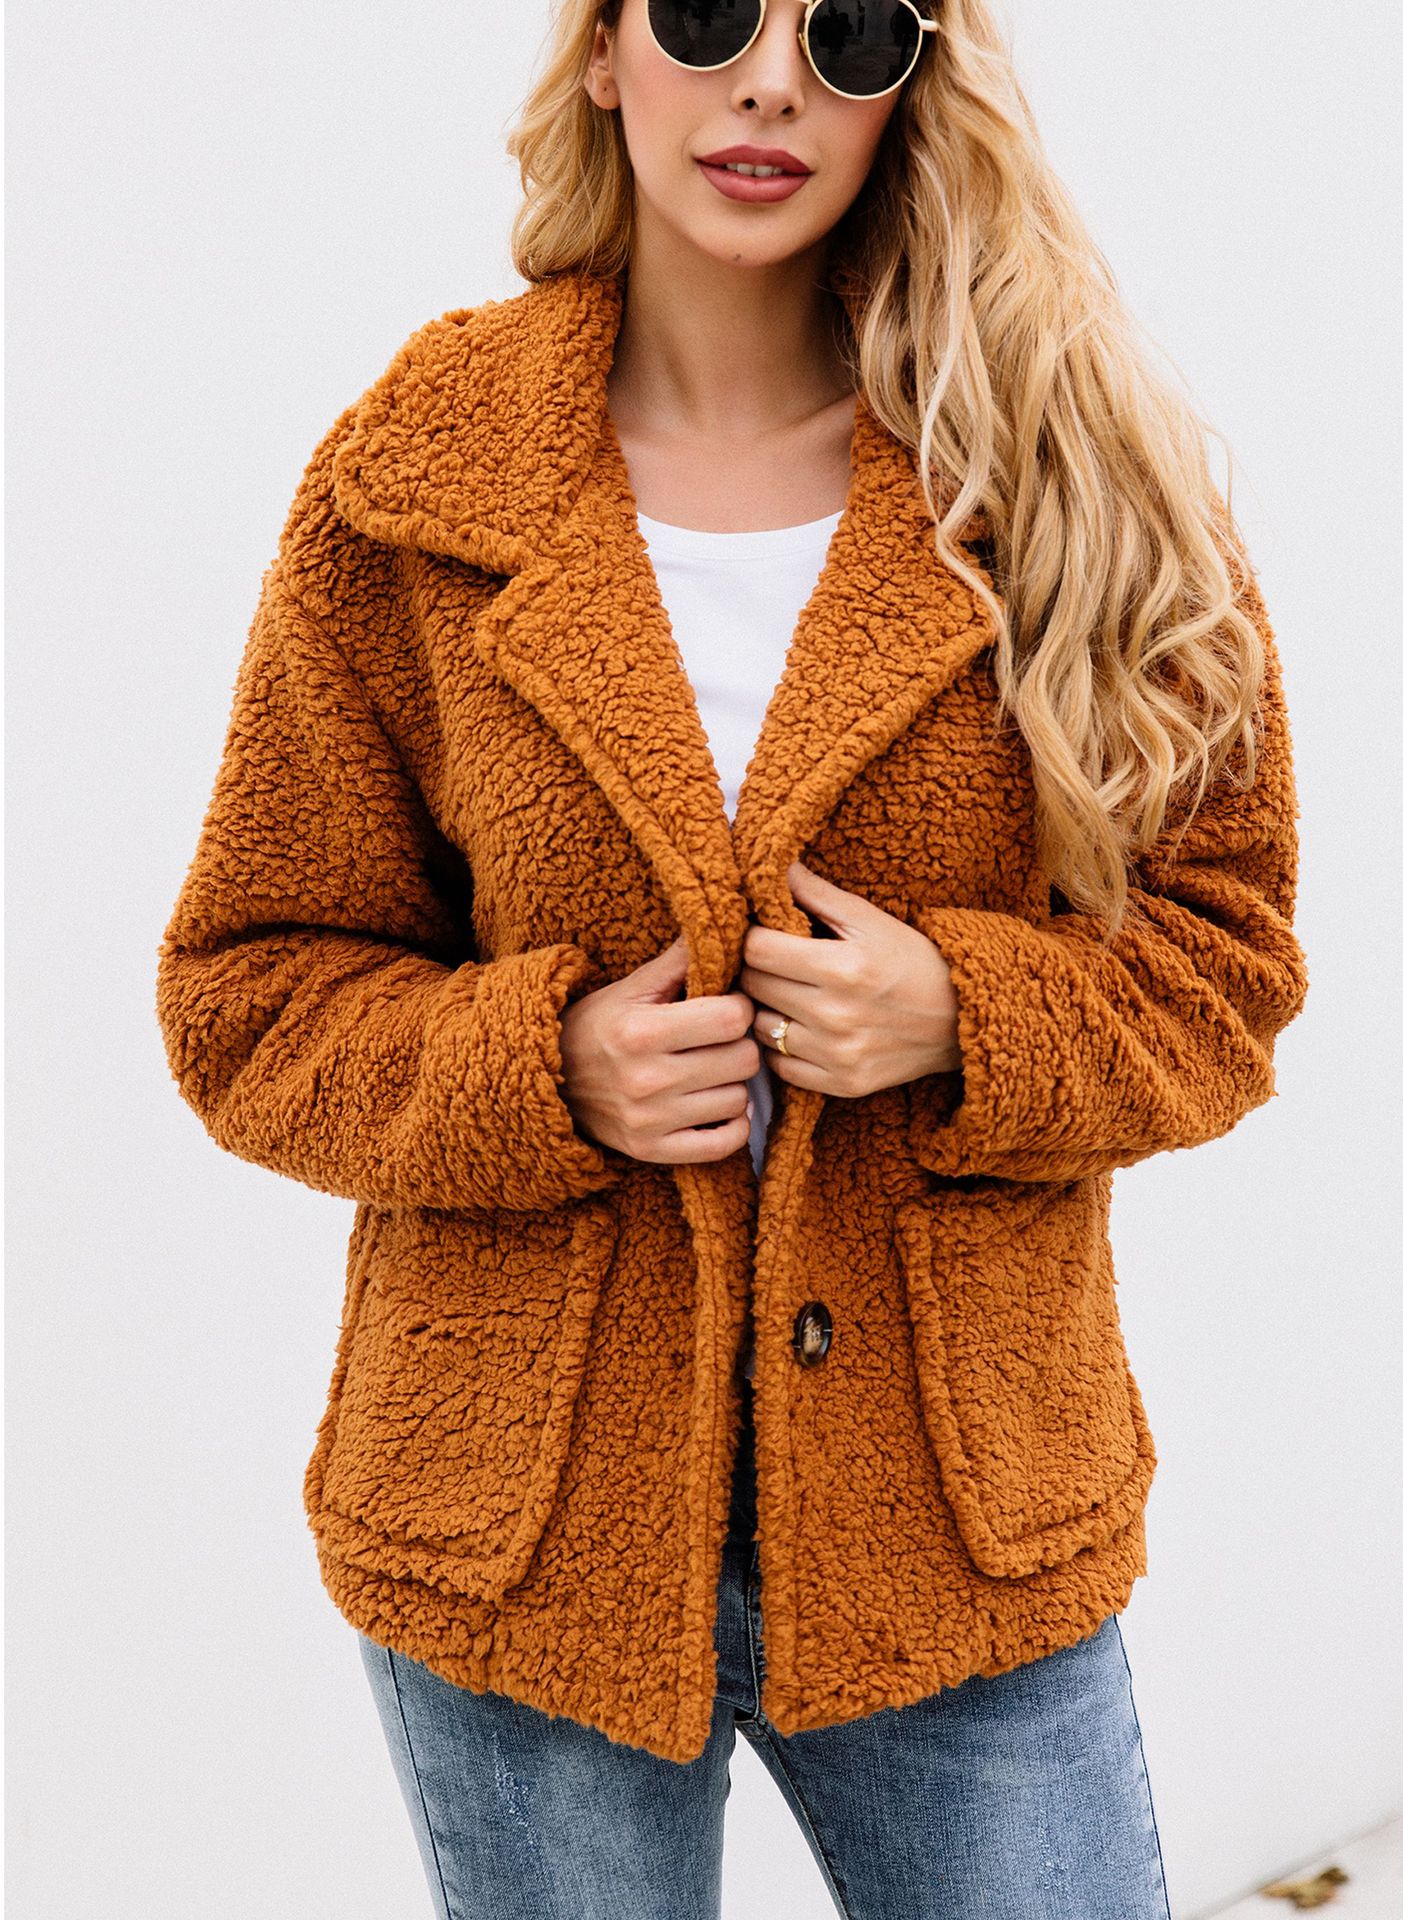 Manteau de laine femme - Ref 3416856 Image 2